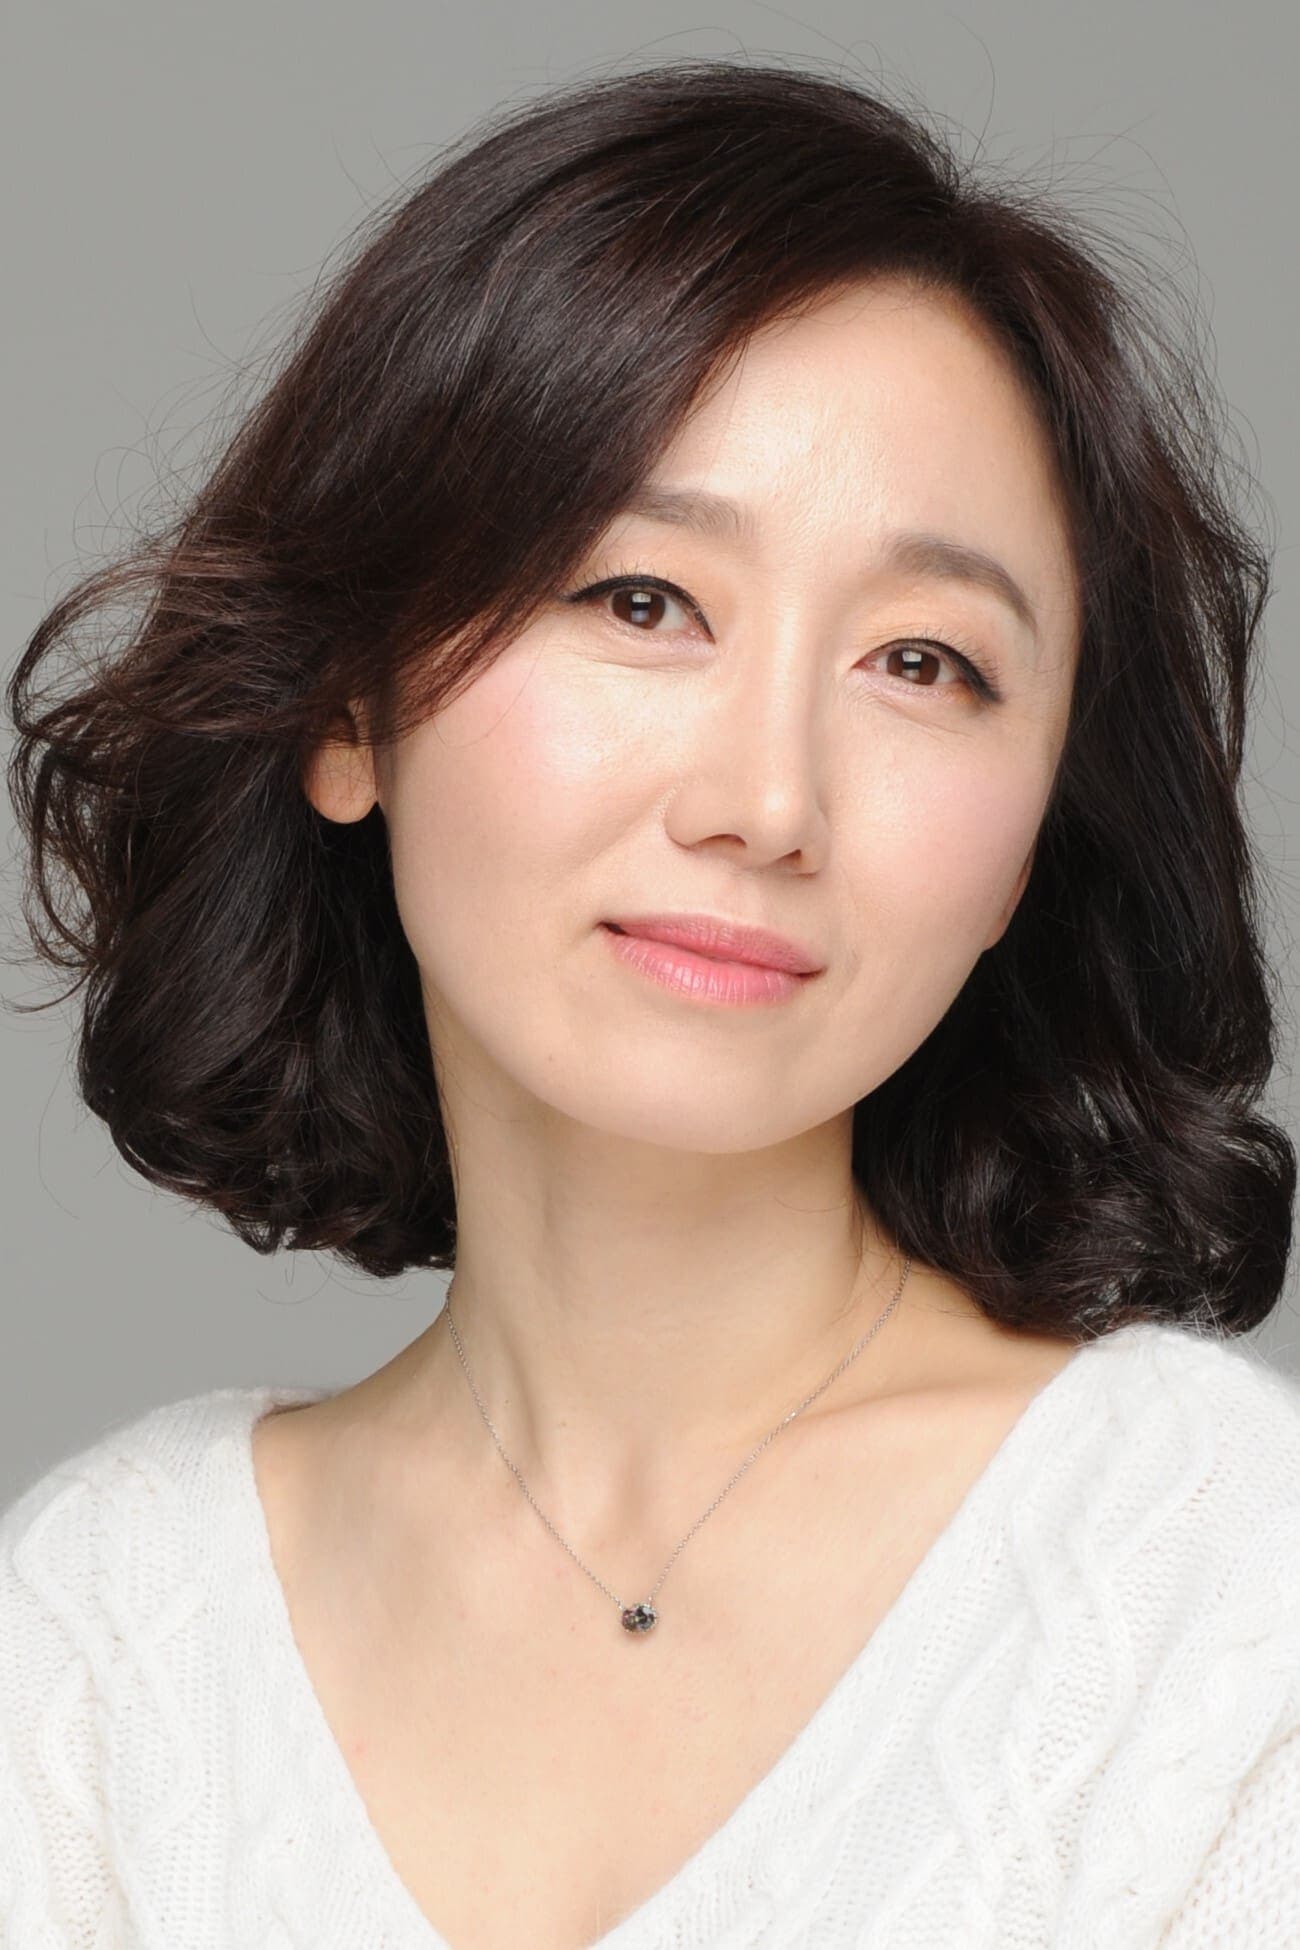 Lee Ji-ha | Female Owner of Ryokan